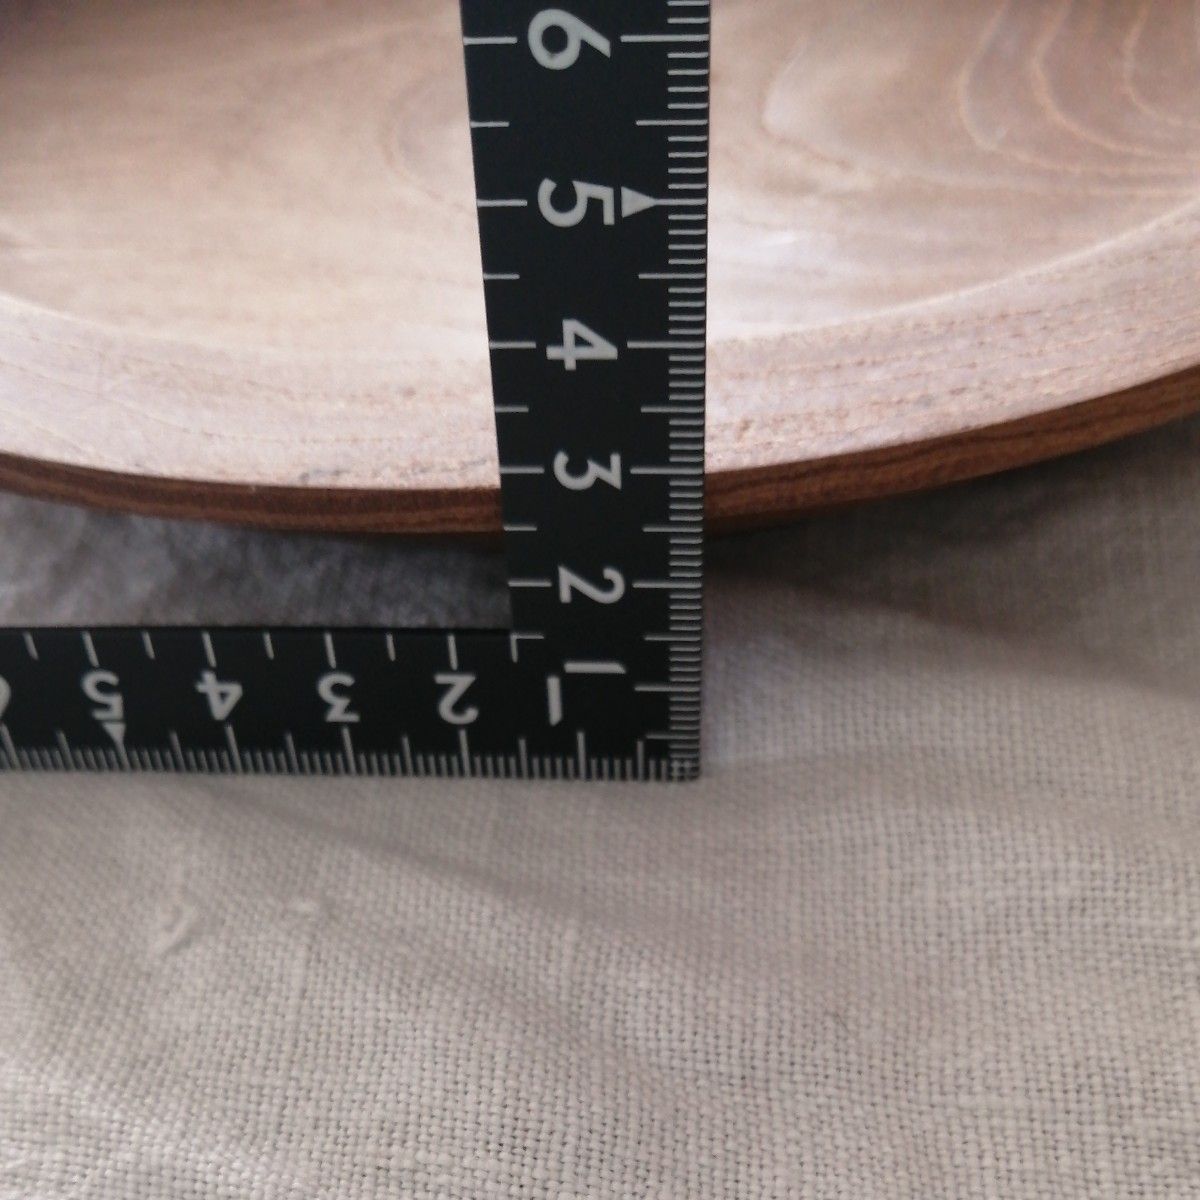 無垢チーク材 丸皿 22cm